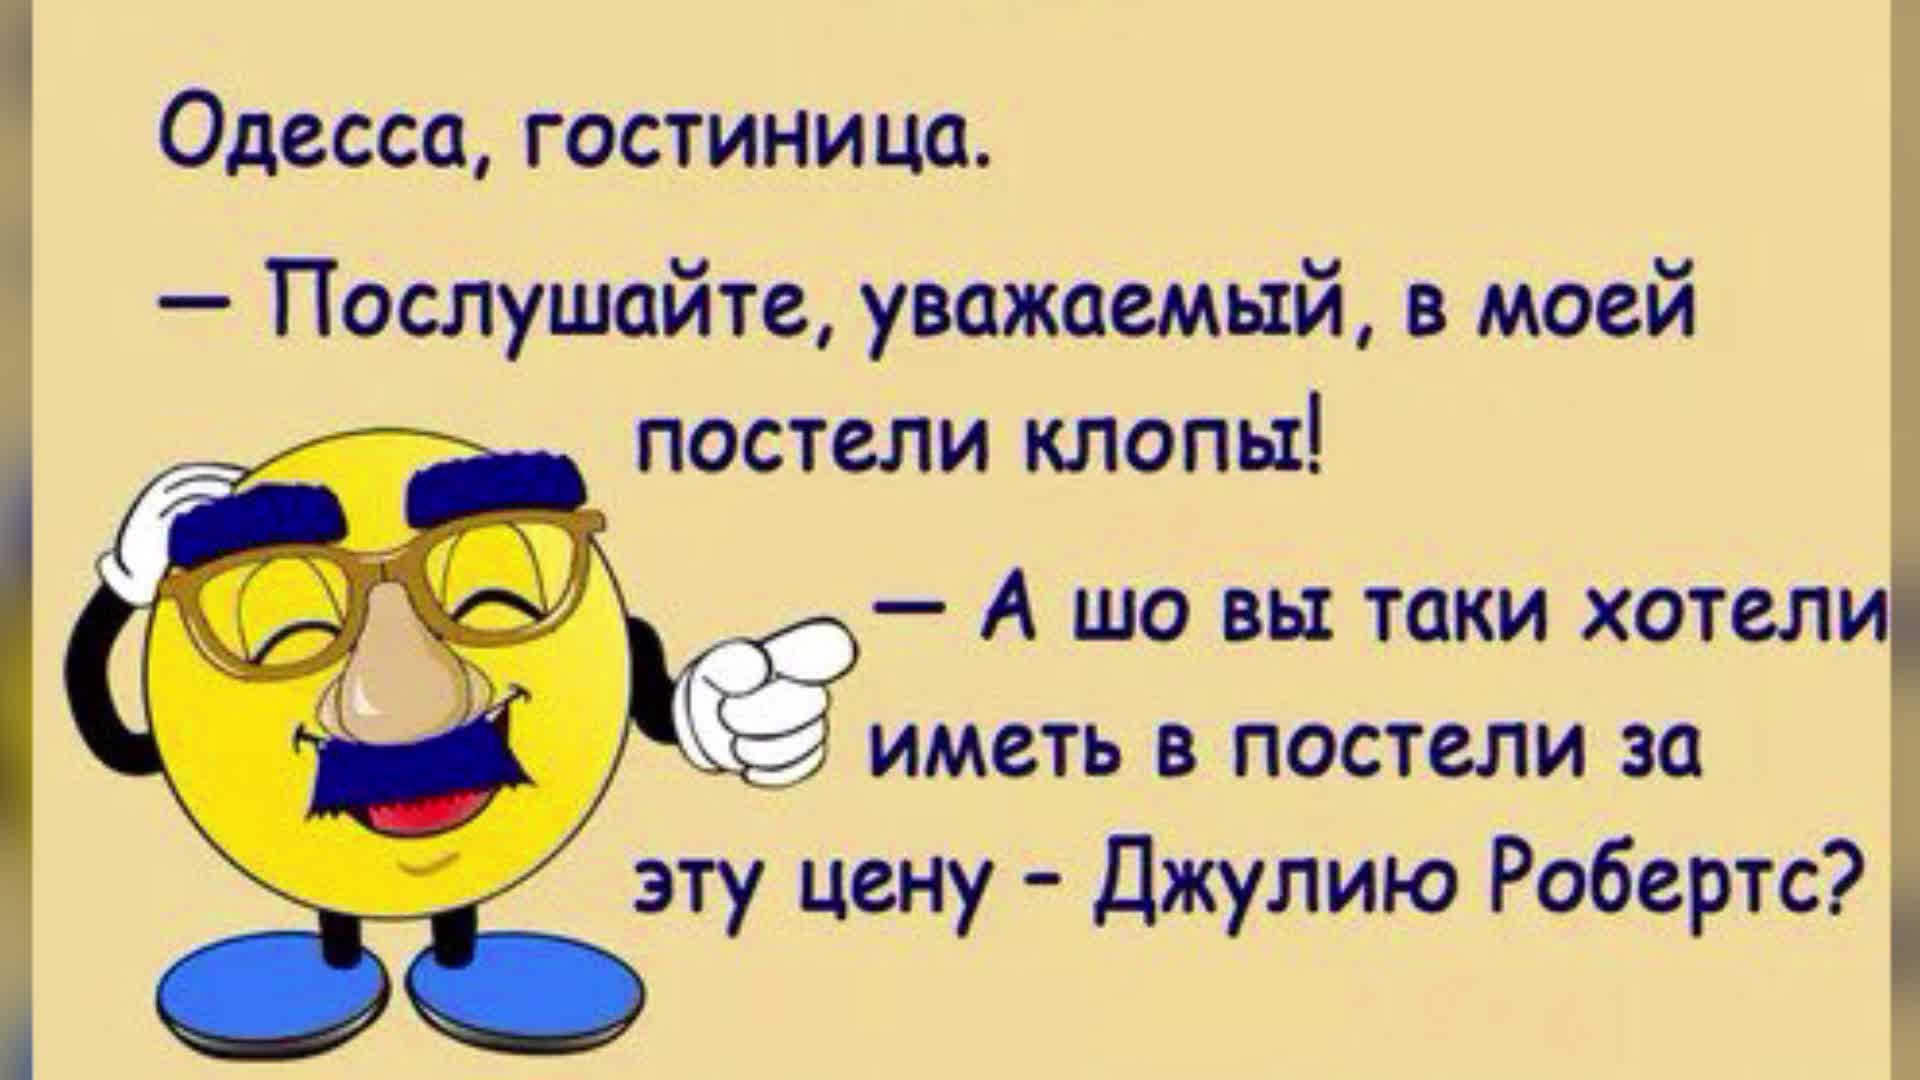 Бесплатные одесские анекдоты. Одесские анекдоты. Одесские анекдоты свежие. Одесские анекдоты свежие смешные. Одесские анекдоты самые смешные.